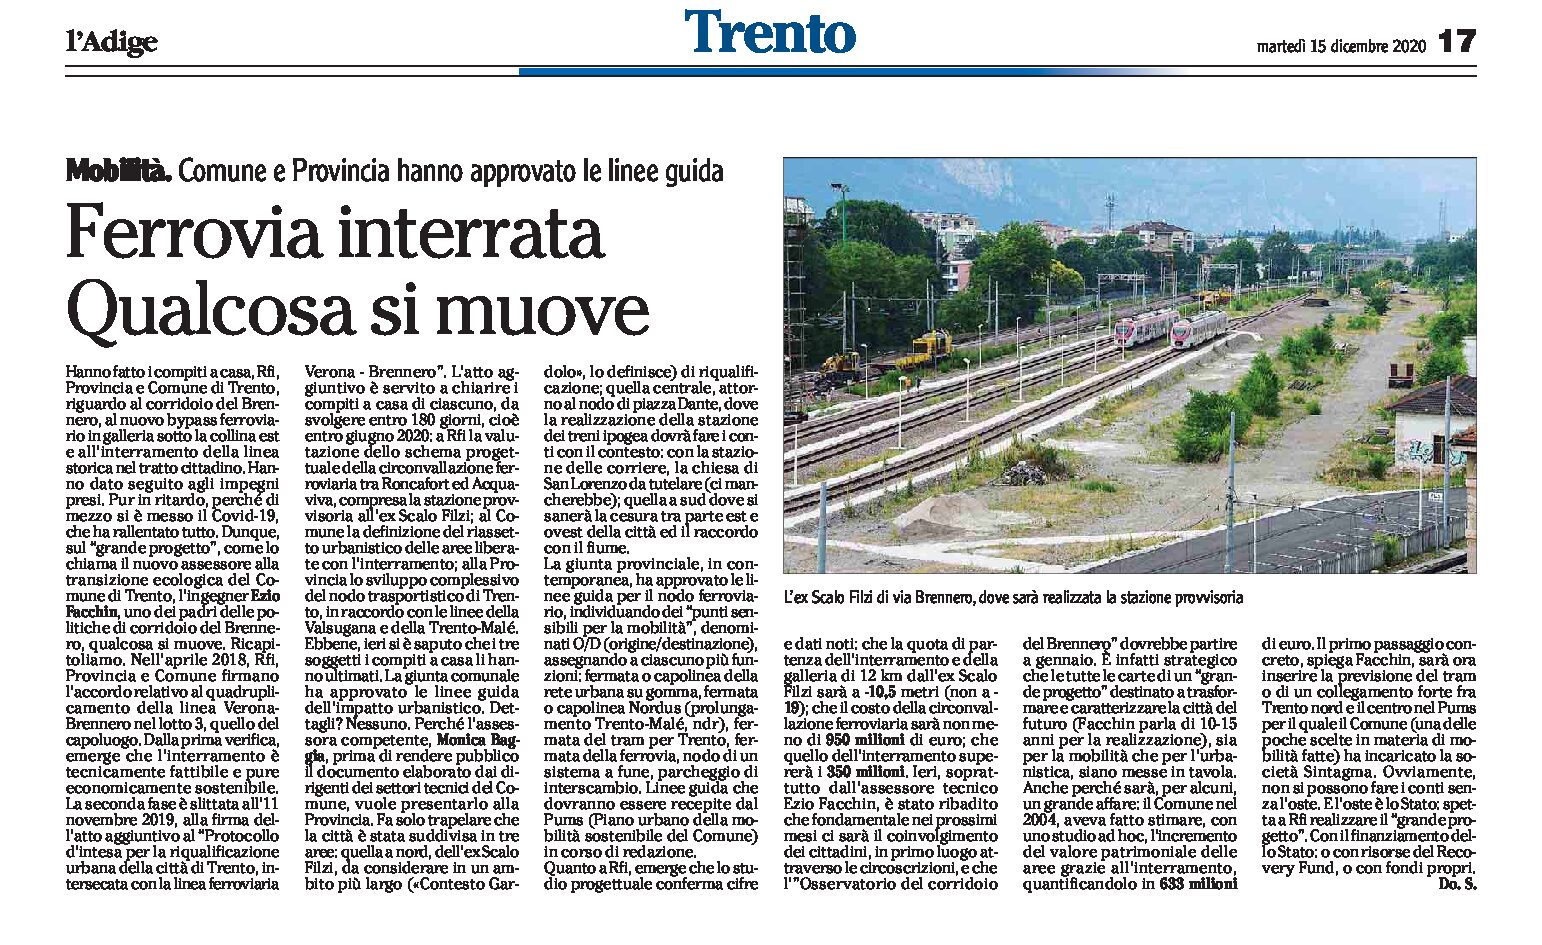 Trento, mobilità: ferrovia interrata, qualcosa si muove